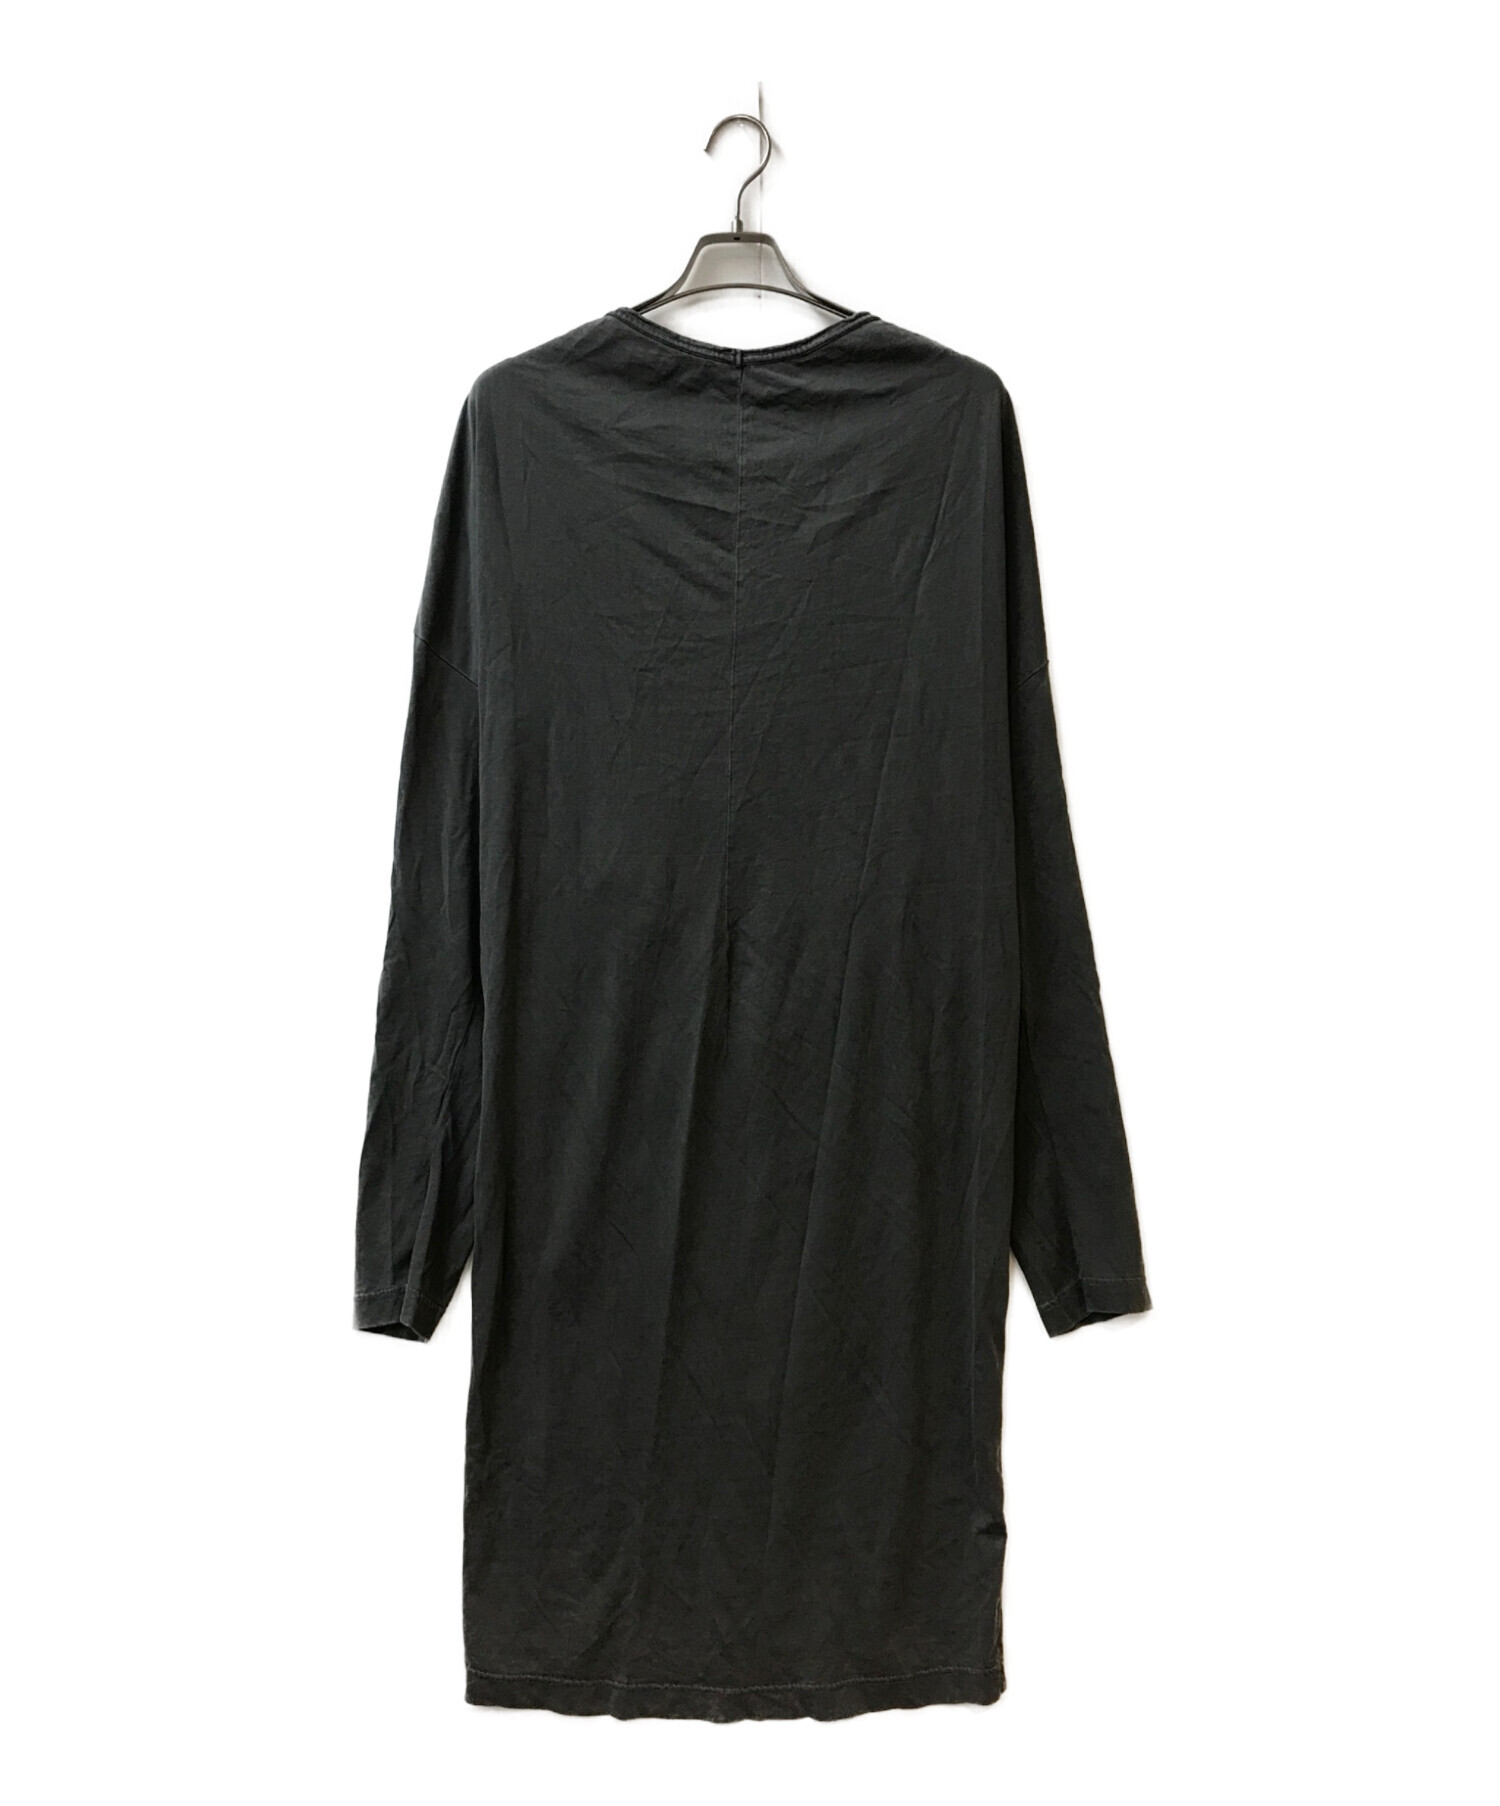 高級✨BALENCIAGA 2017 ロングワンピース ドレス 絹 黒 リボン-